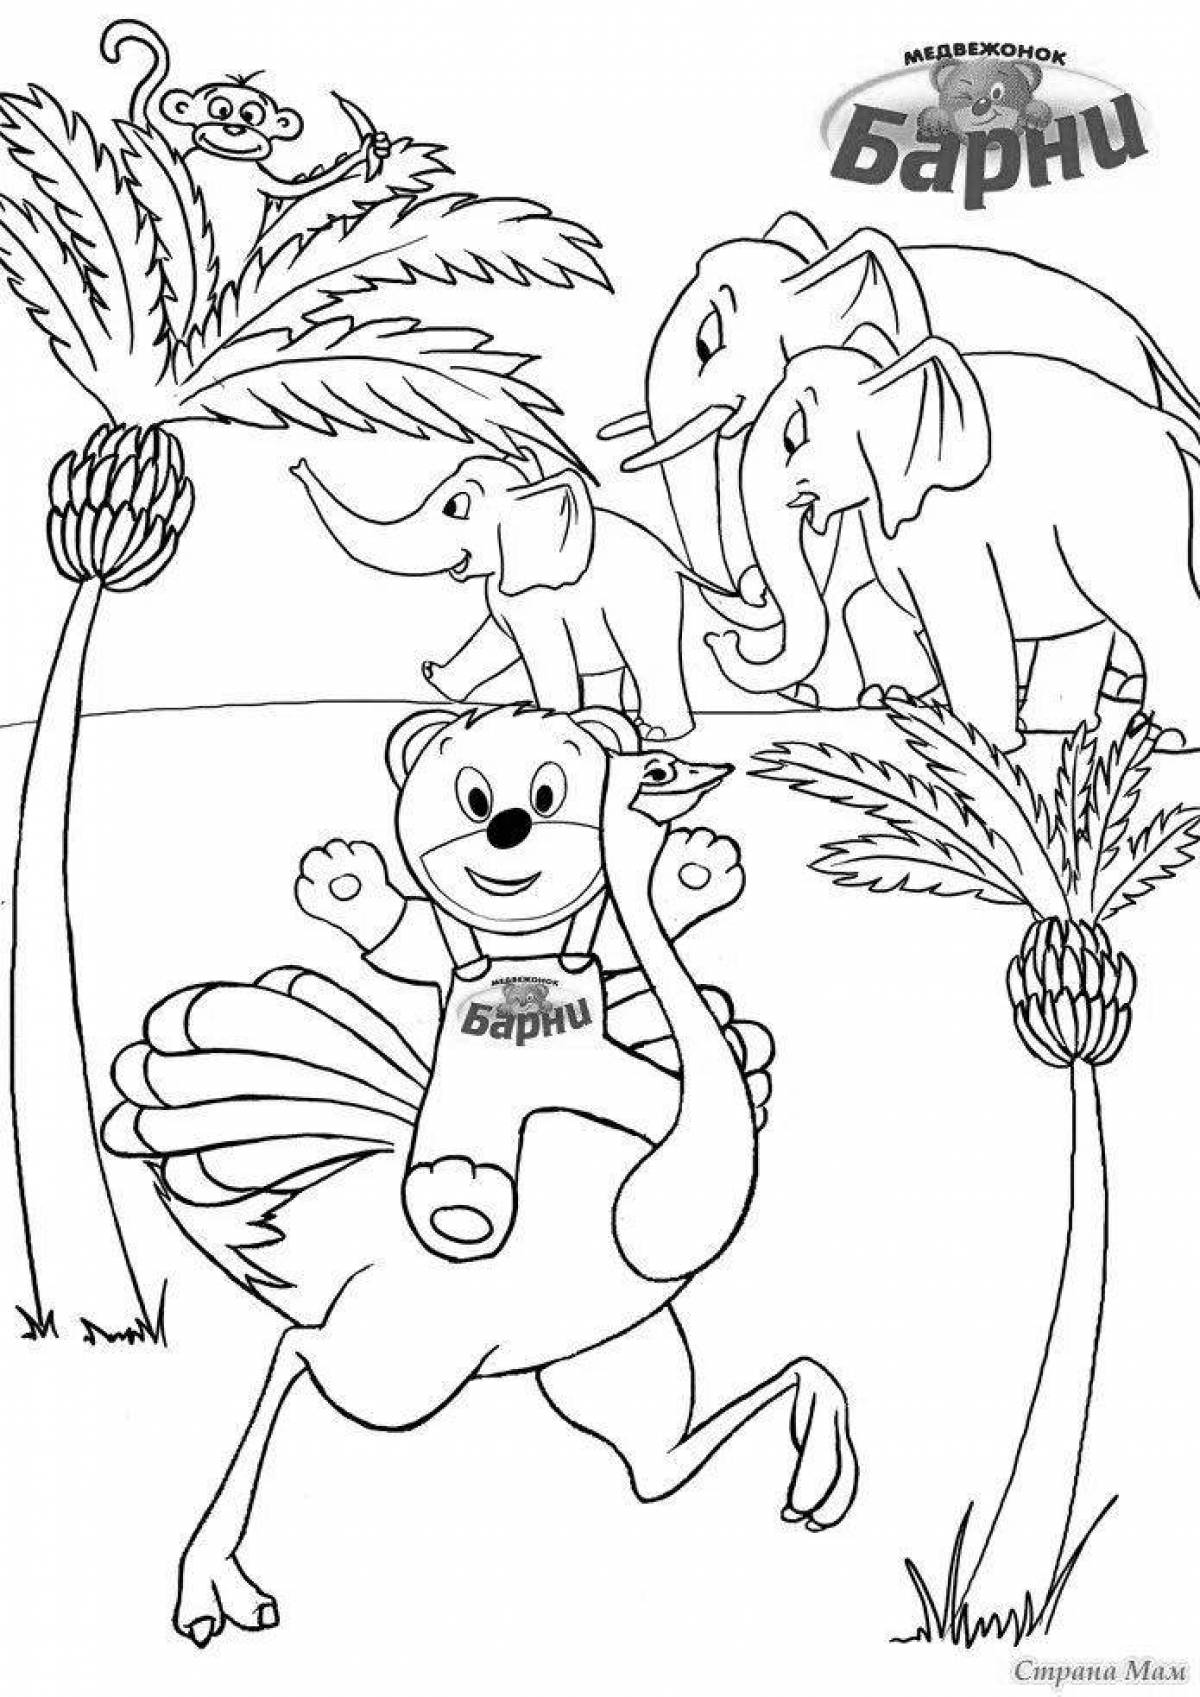 Joyful barney coloring page